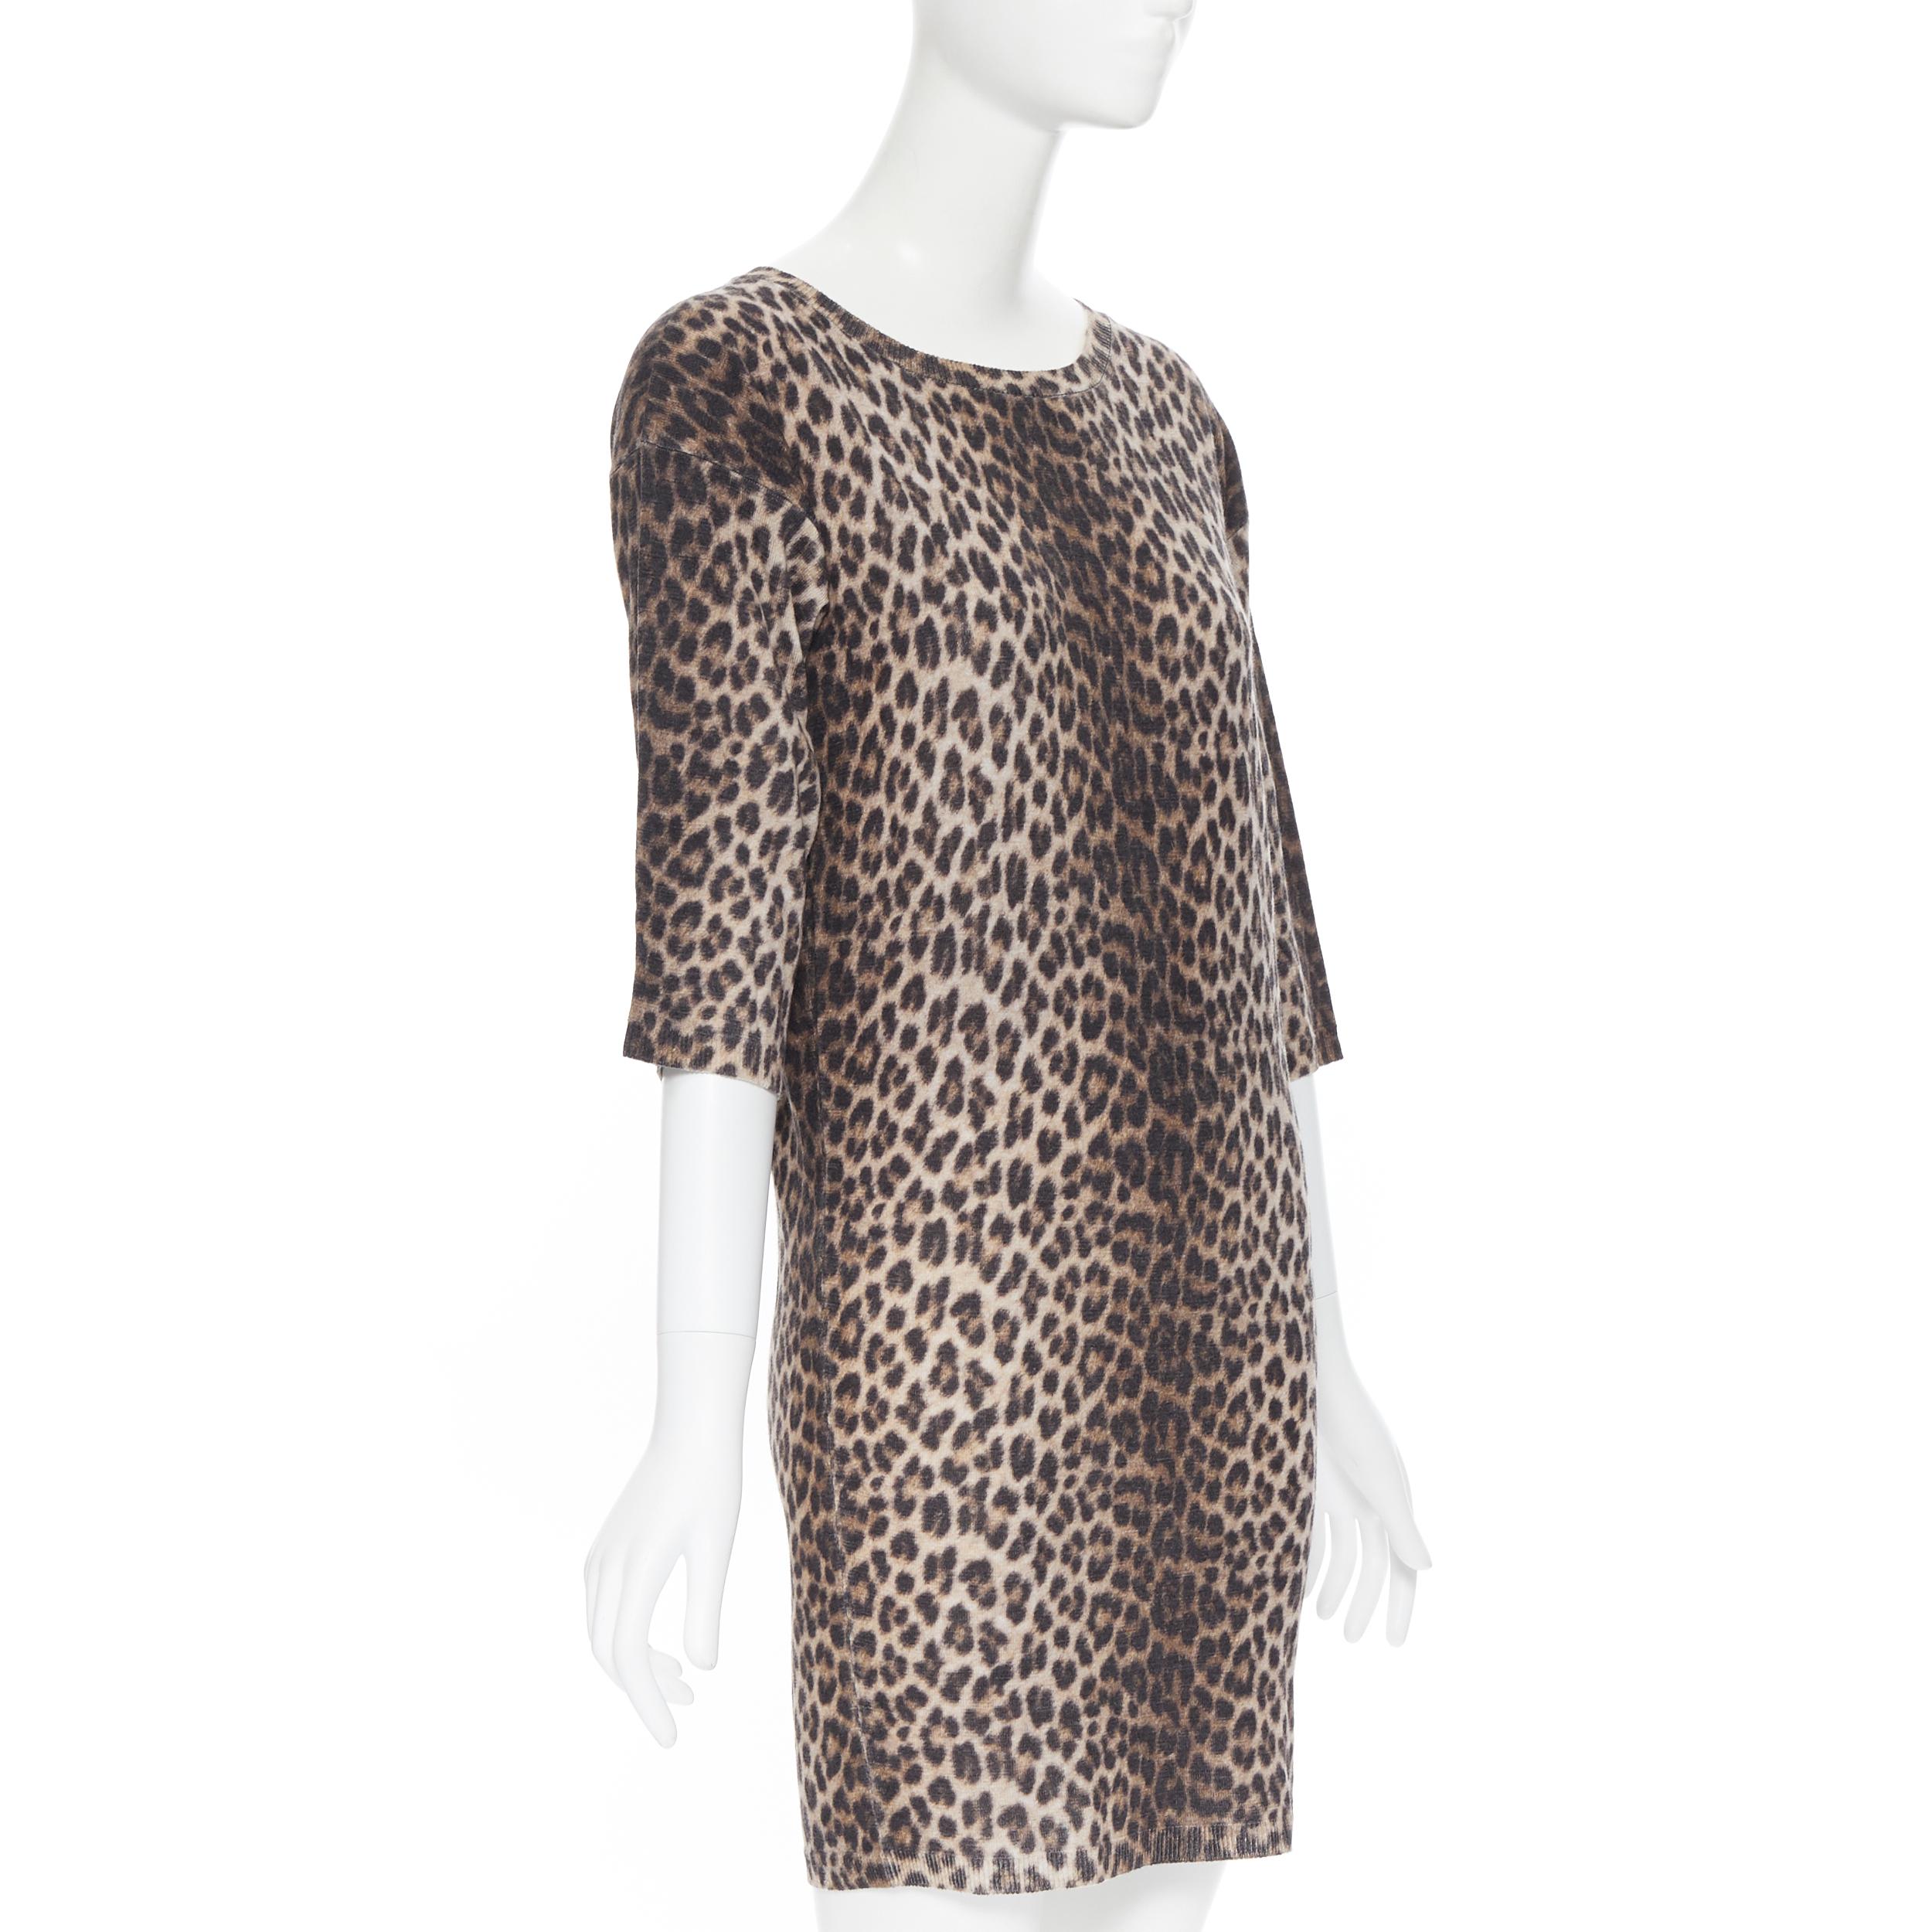 Gray LANVIN ELBAZ 2010 100% wool brown leopard spot 3/4 sleeve knit sweater dress XS